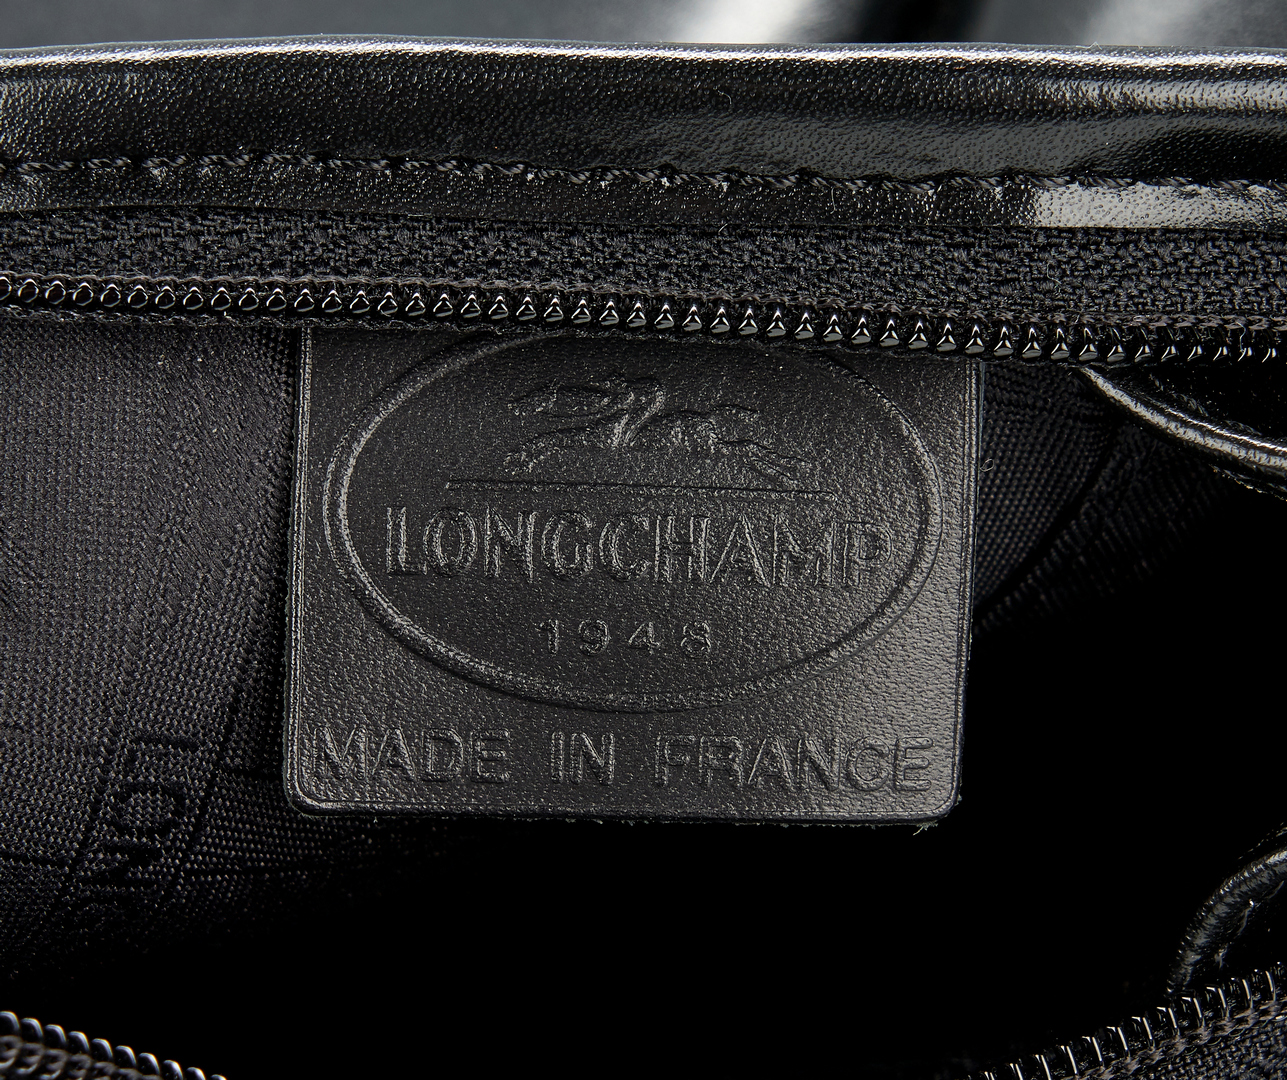 Lot 1026: 5 European Designer Items, incl. Loewe & Longchamp